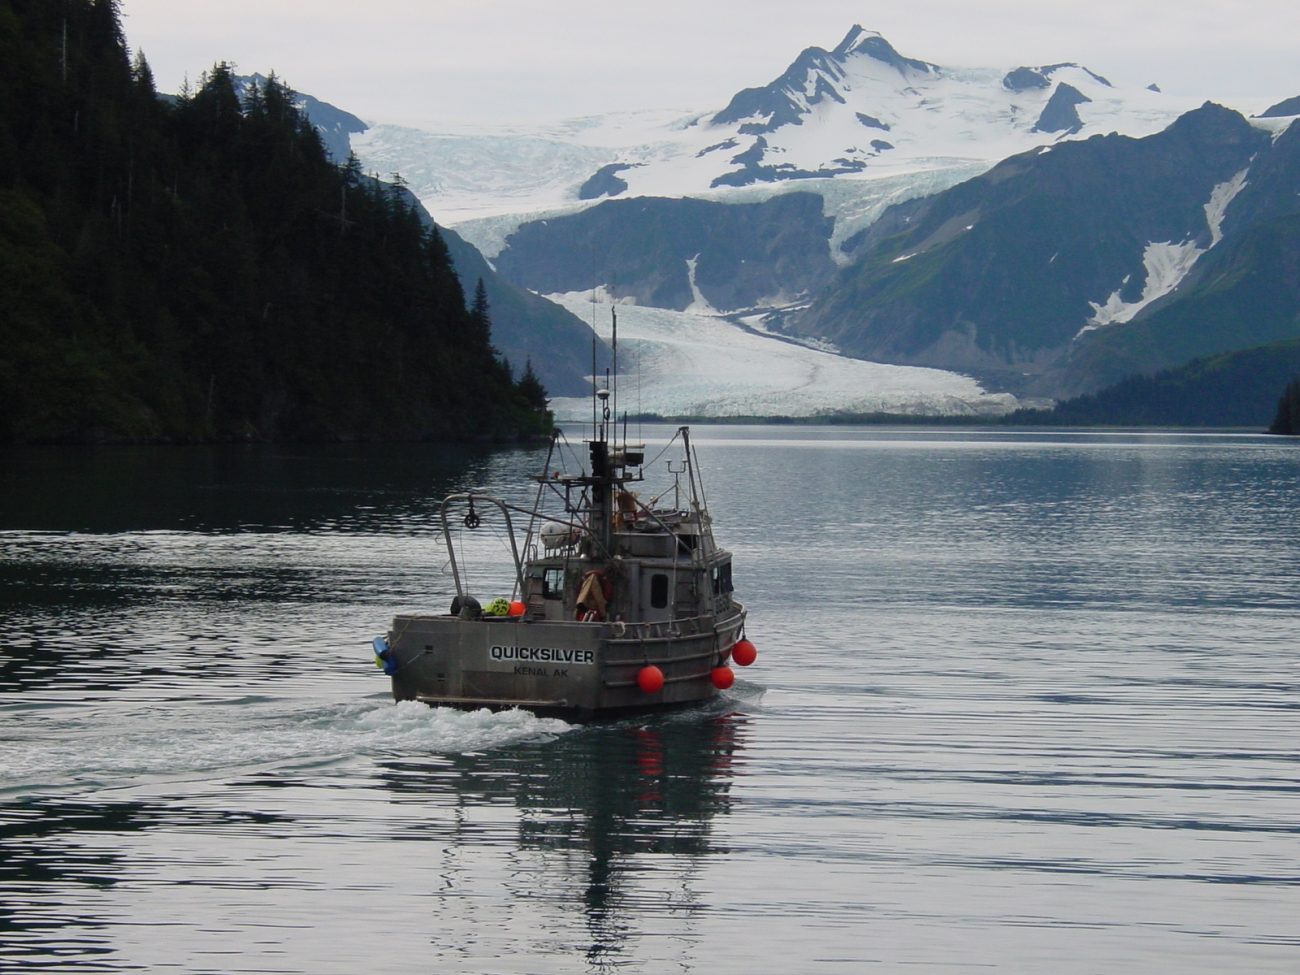 The contract survey vessel QUICKSILVER underway